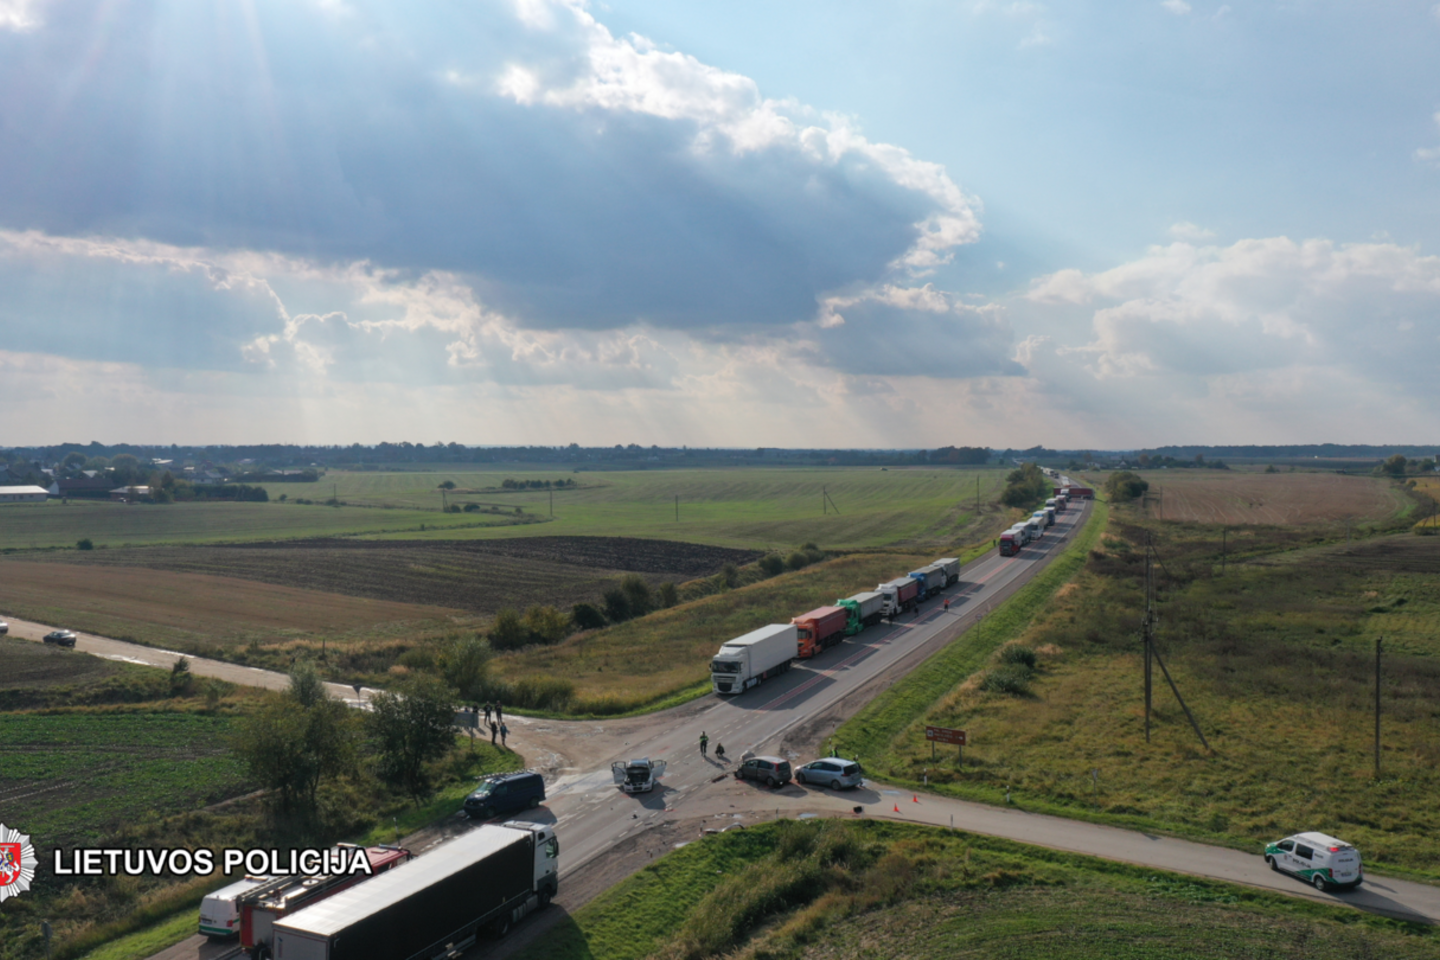  Kelyje „Via Baltica“ – kraupi avarija: susidūrus 4 automobiliams, sužeisti 8 žmonės, tarp jų ir ukrainiečių šeima.<br> Policijos nuotr.